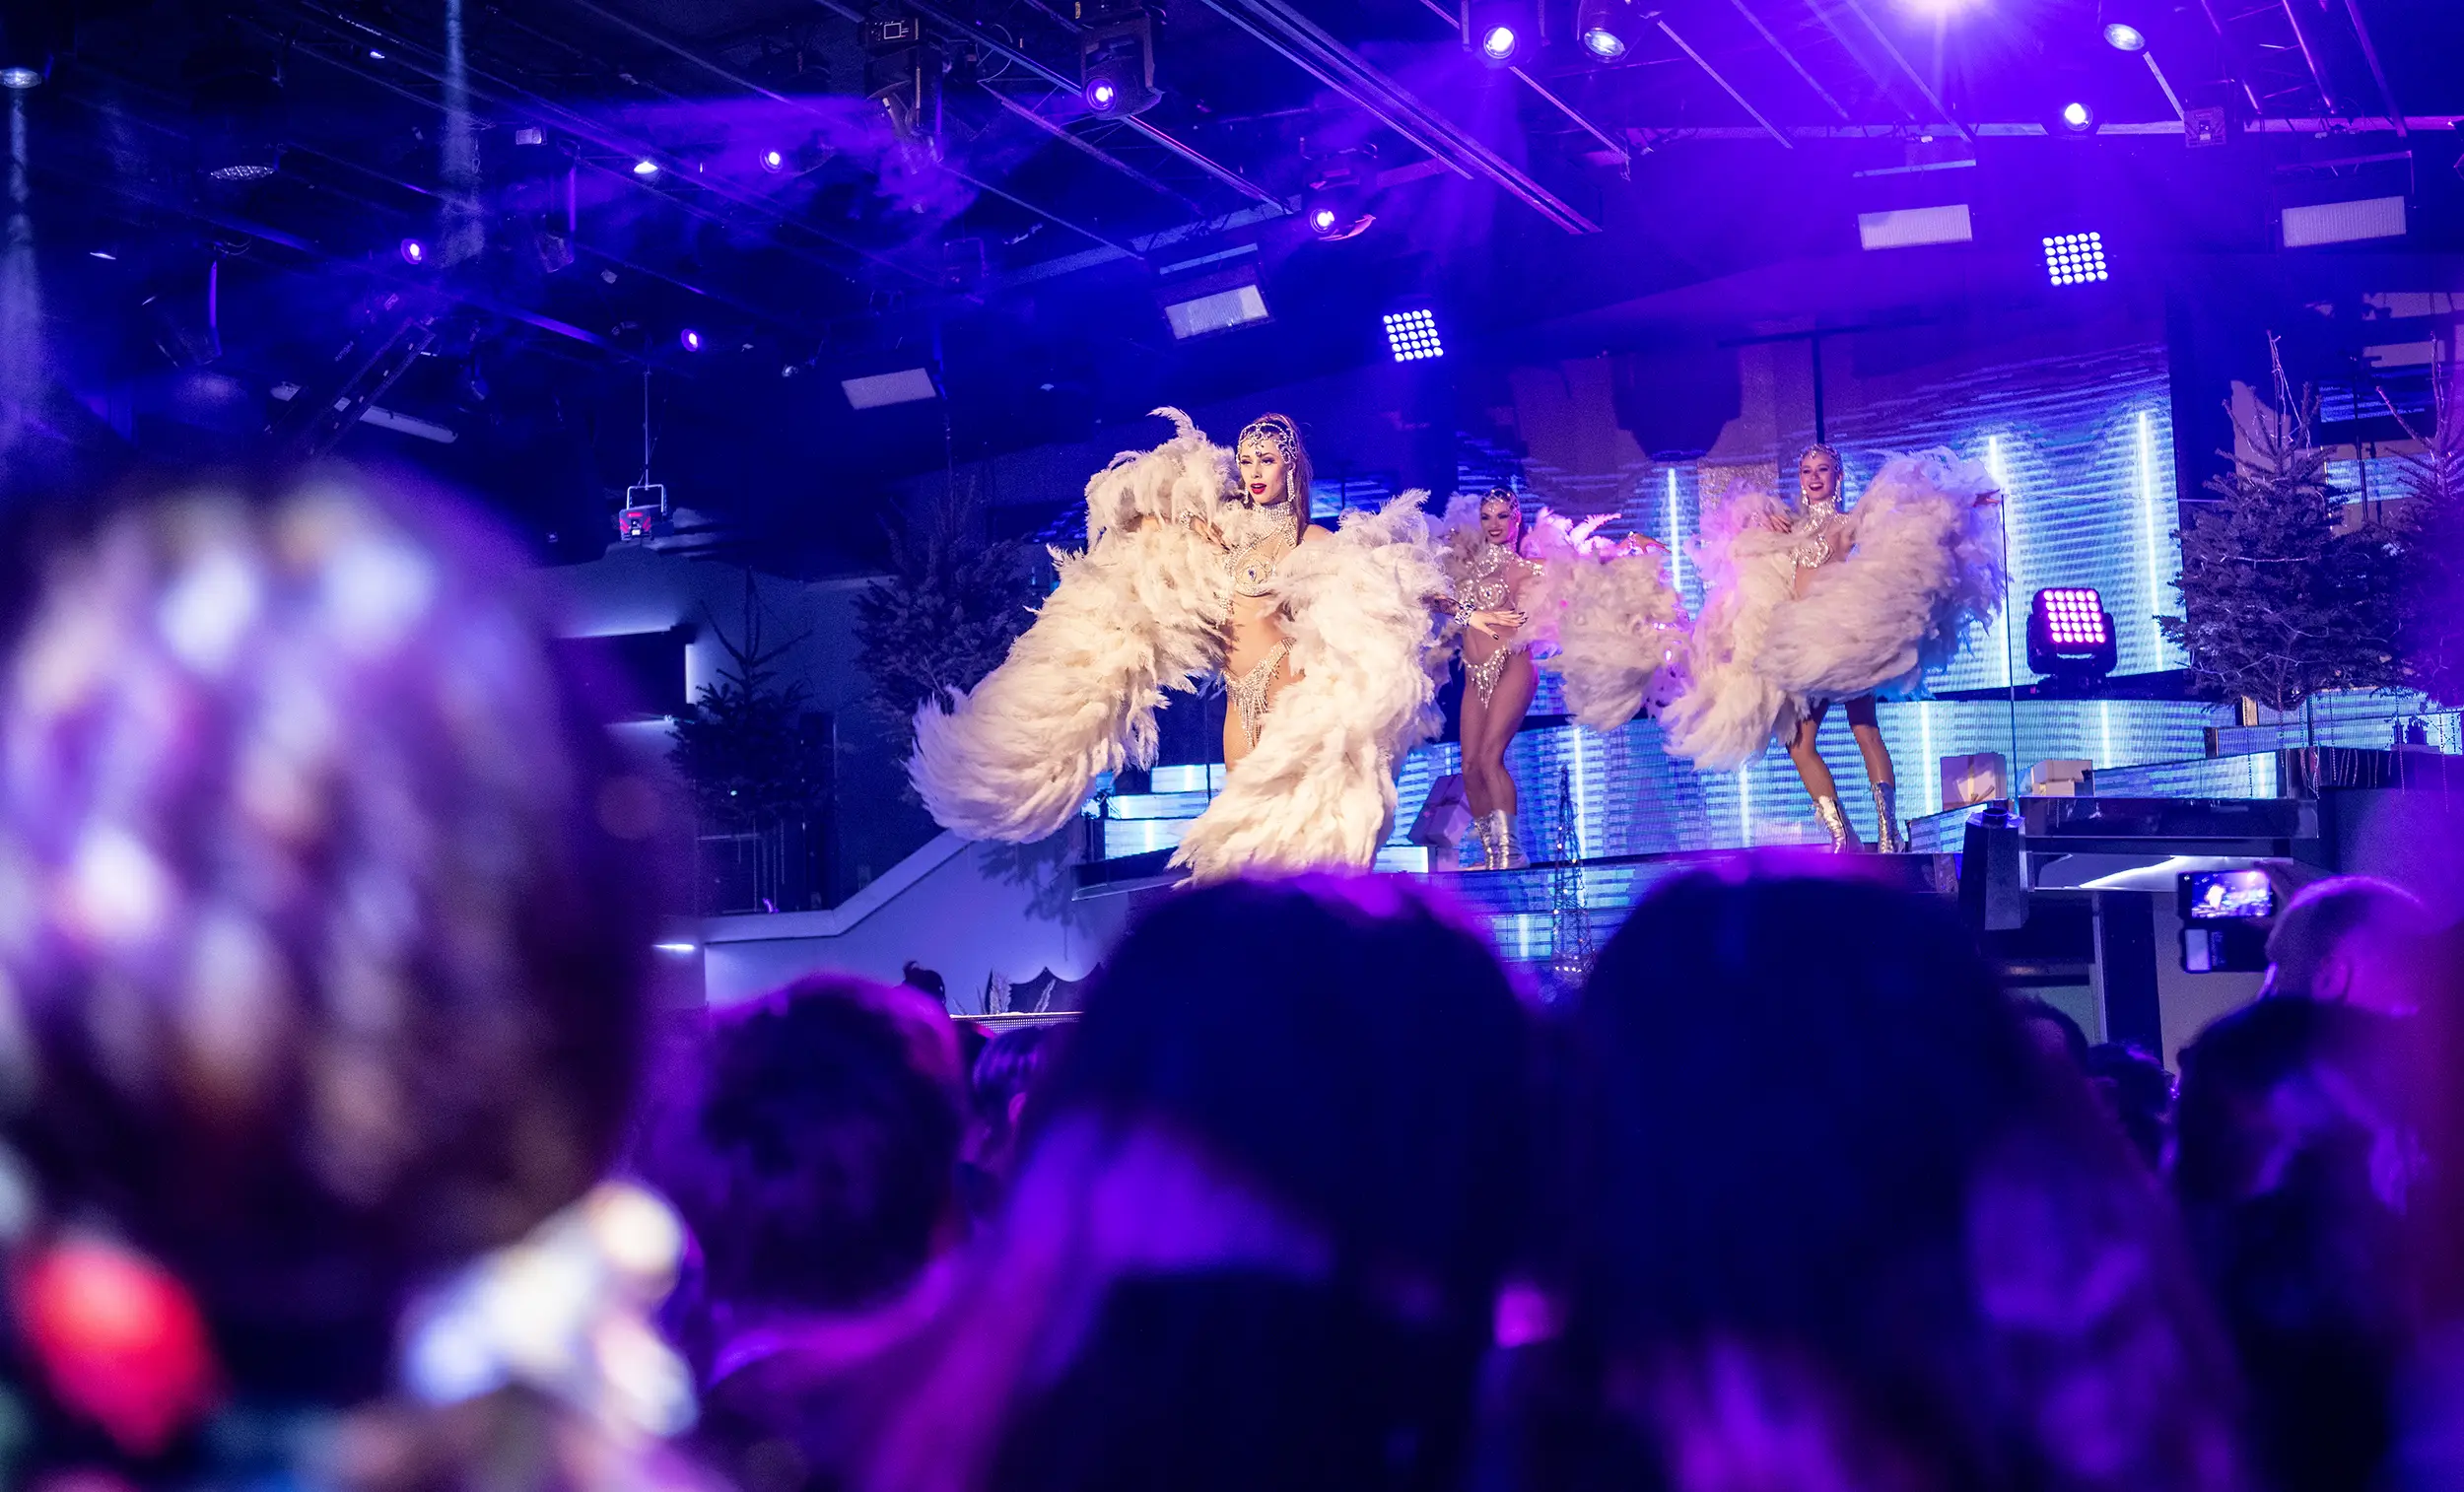 Danseuses avec des plumes pour le gala de fin d'année d'une entreprise normande réalisé par le Groupe Silam.